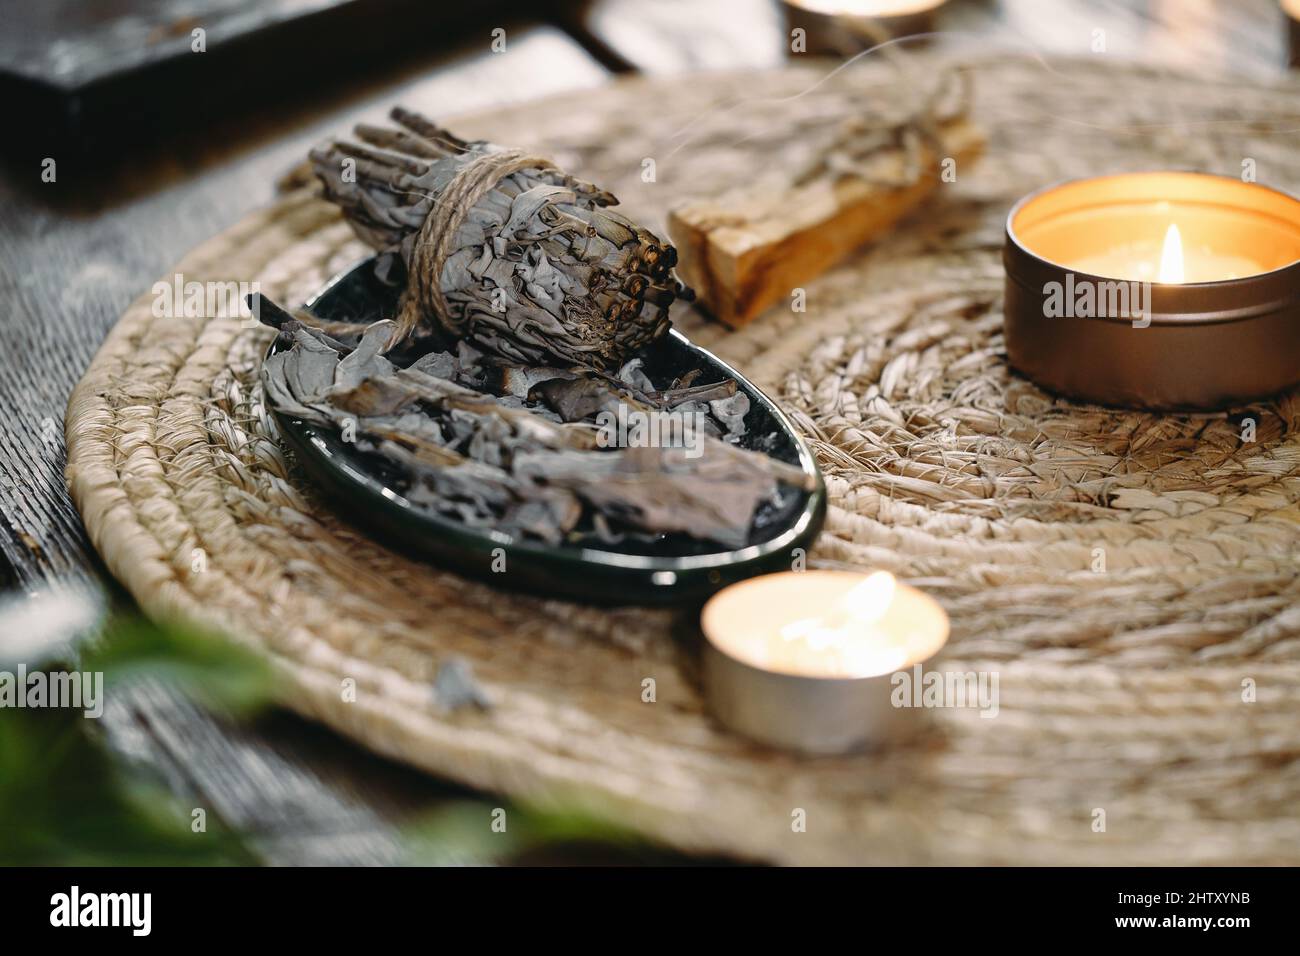 Frau Hände brennen weißen Salbei, vor dem Ritual auf dem Tisch mit Kerzen und grünen Pflanzen. Smoke of smudging behandelt Schmerzen und Stress, klar negativ Stockfoto